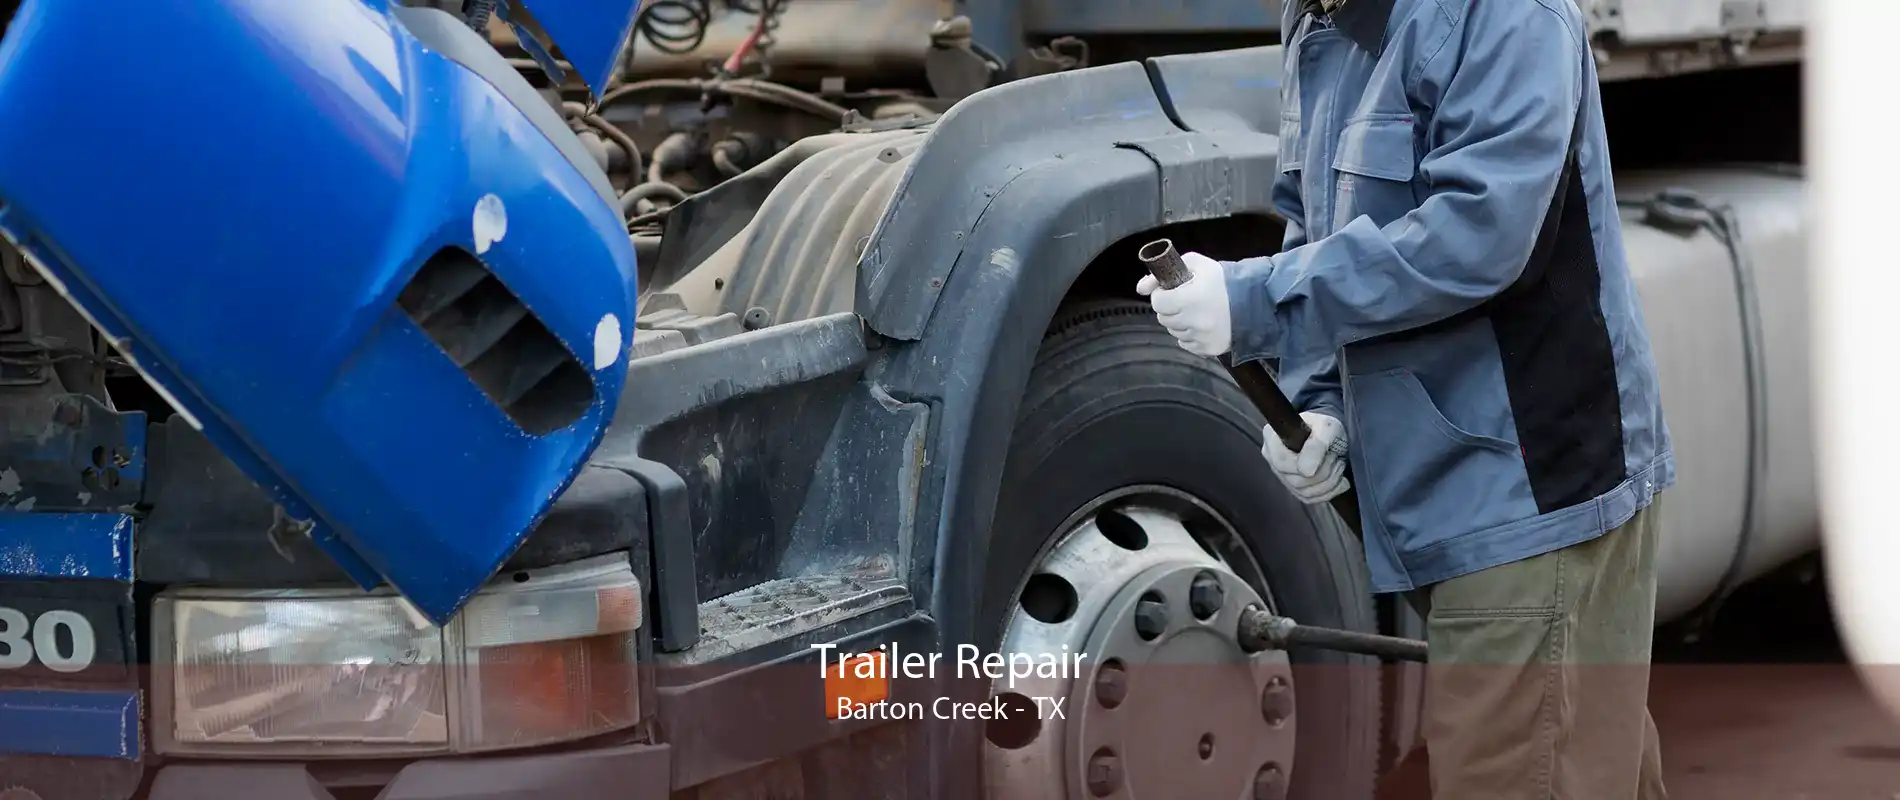 Trailer Repair Barton Creek - TX